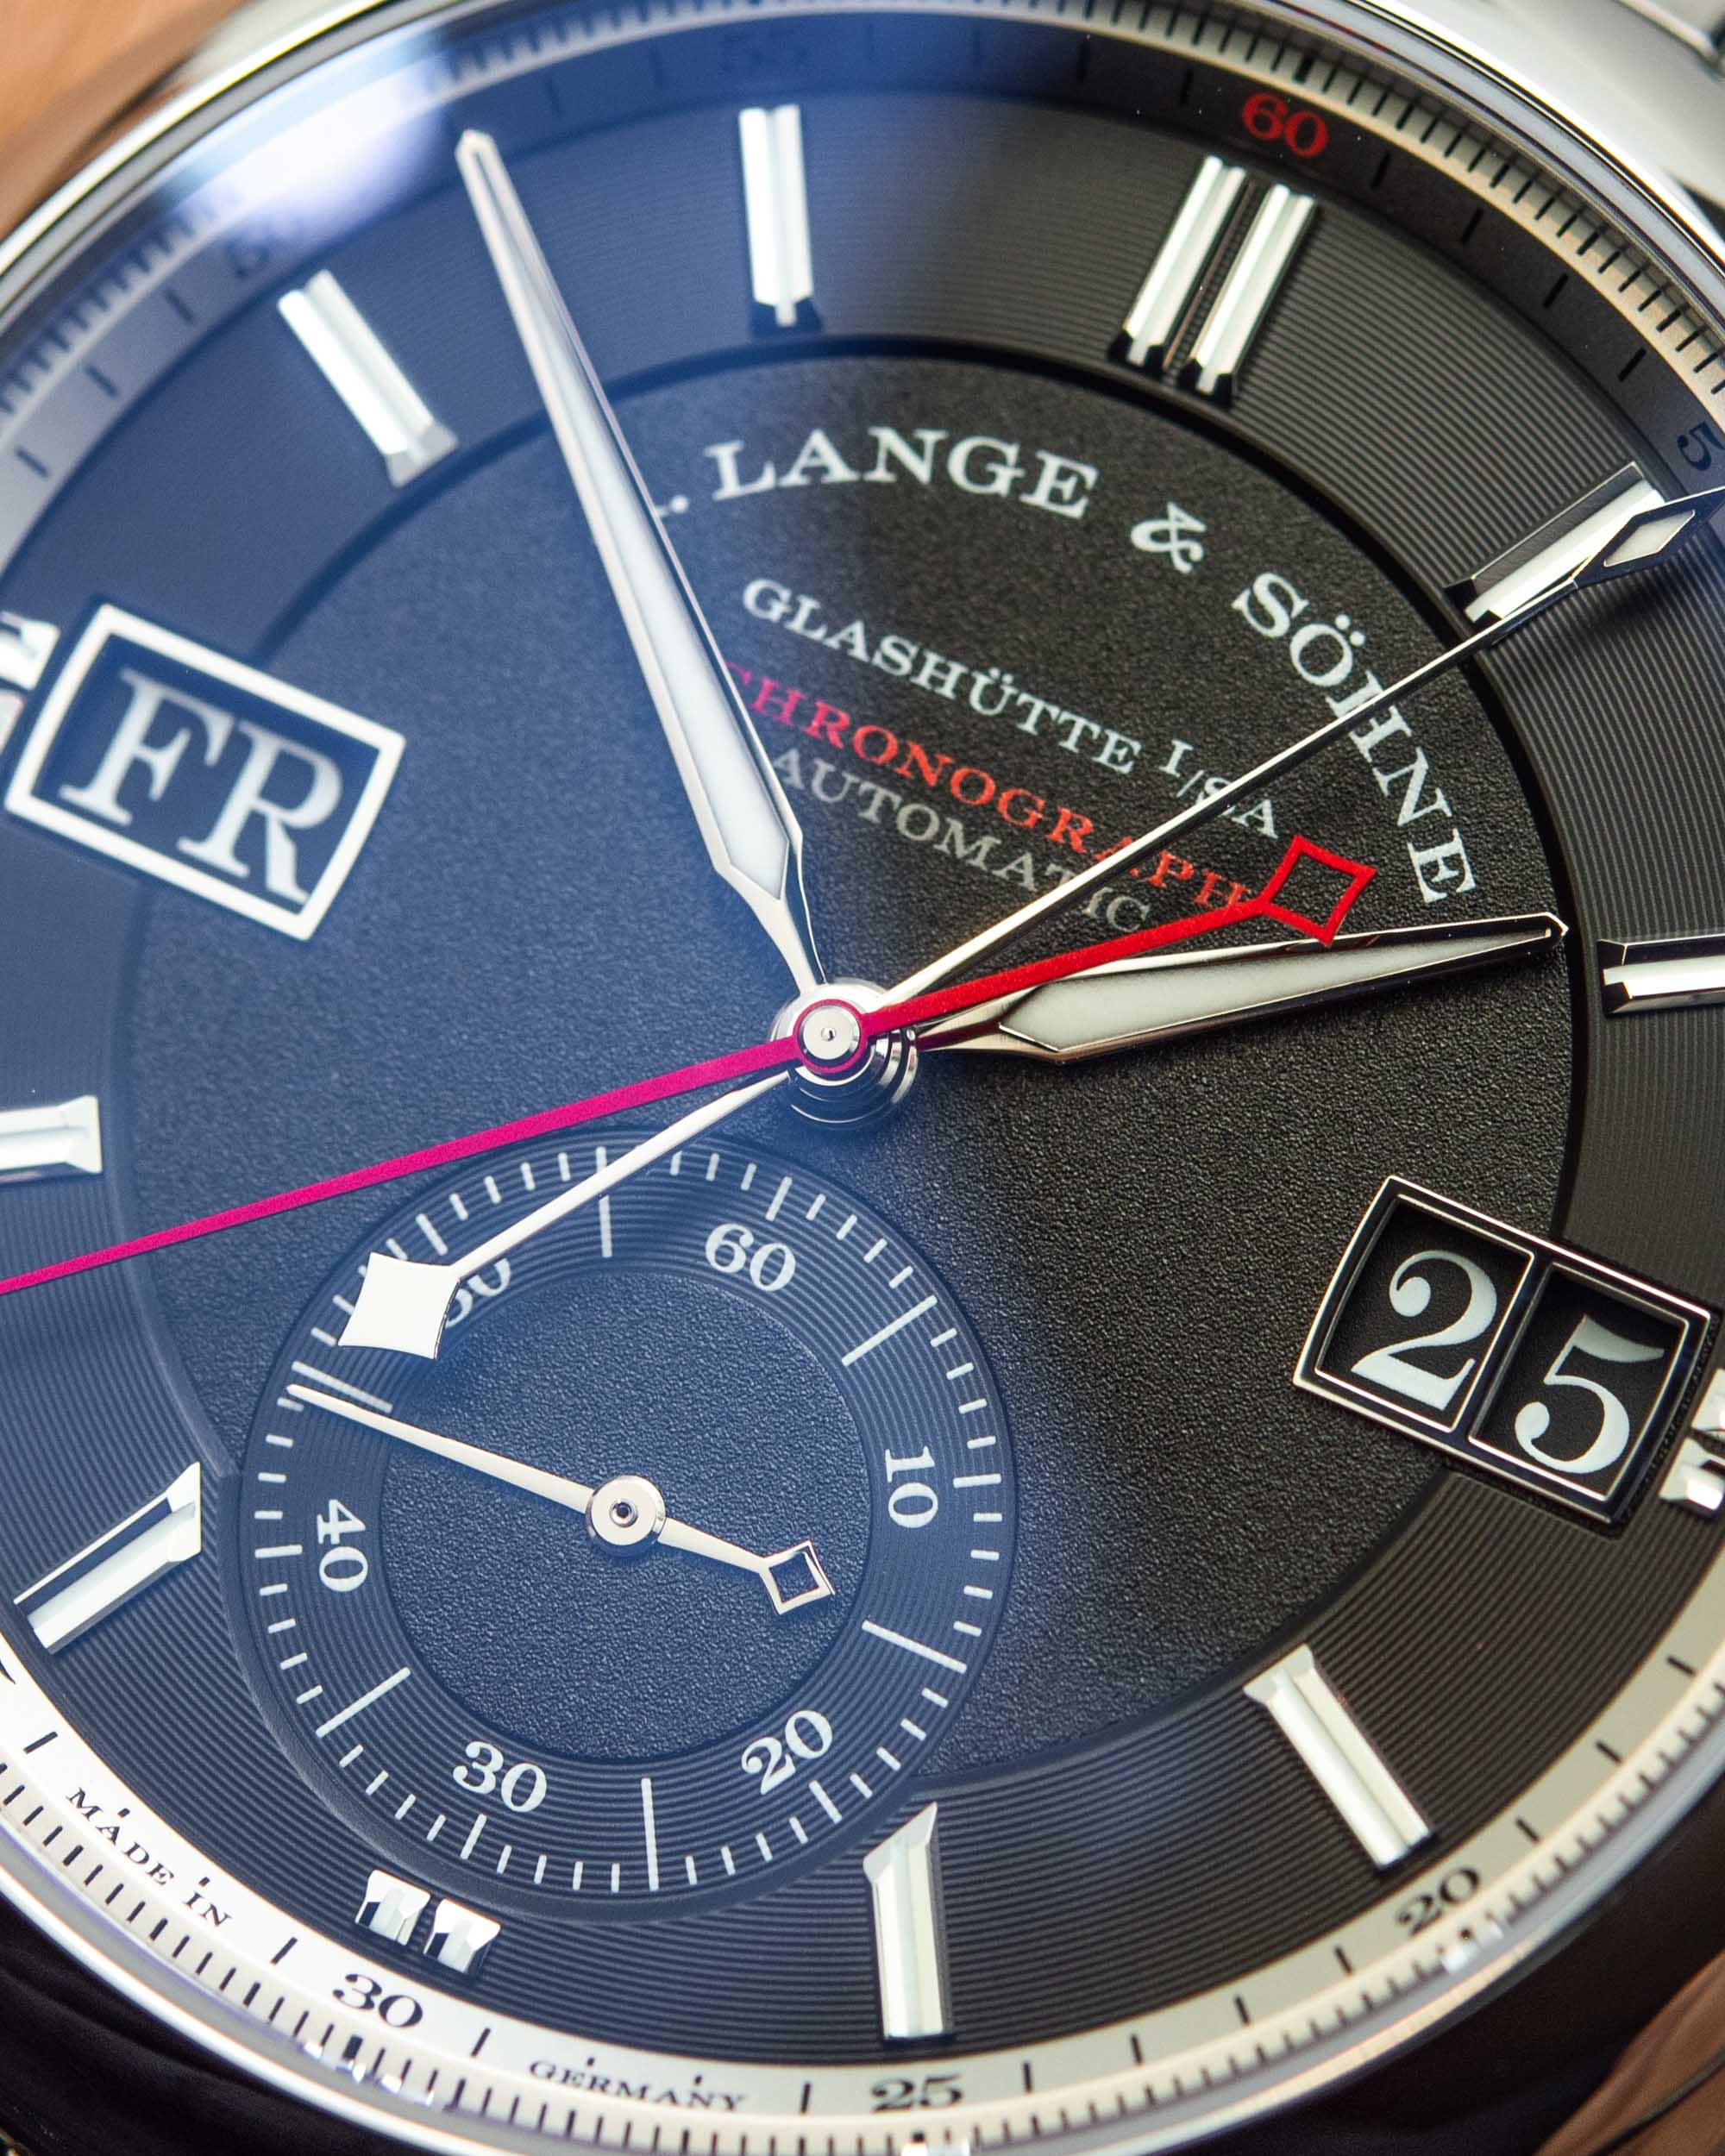 Практический обзор: часы A. Lange & Söhne Odysseus с хронографом